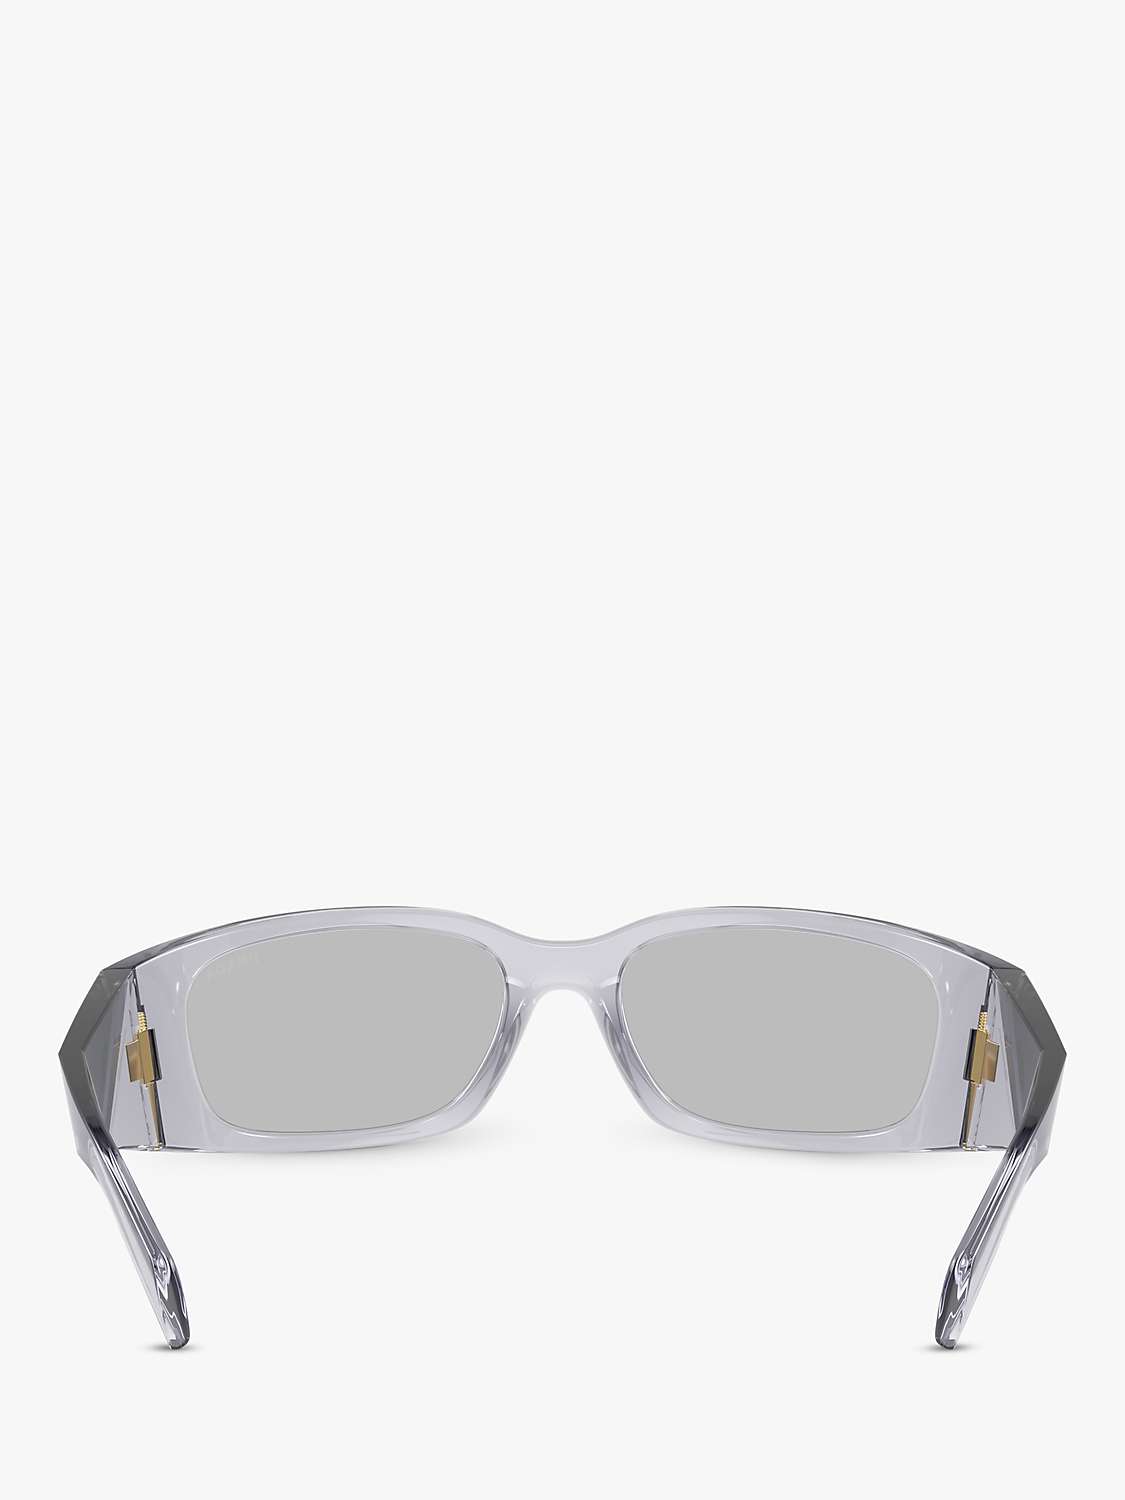 Buy Prada PR A14S Women's Wrap Sunglasses, Transparent Grey Online at johnlewis.com